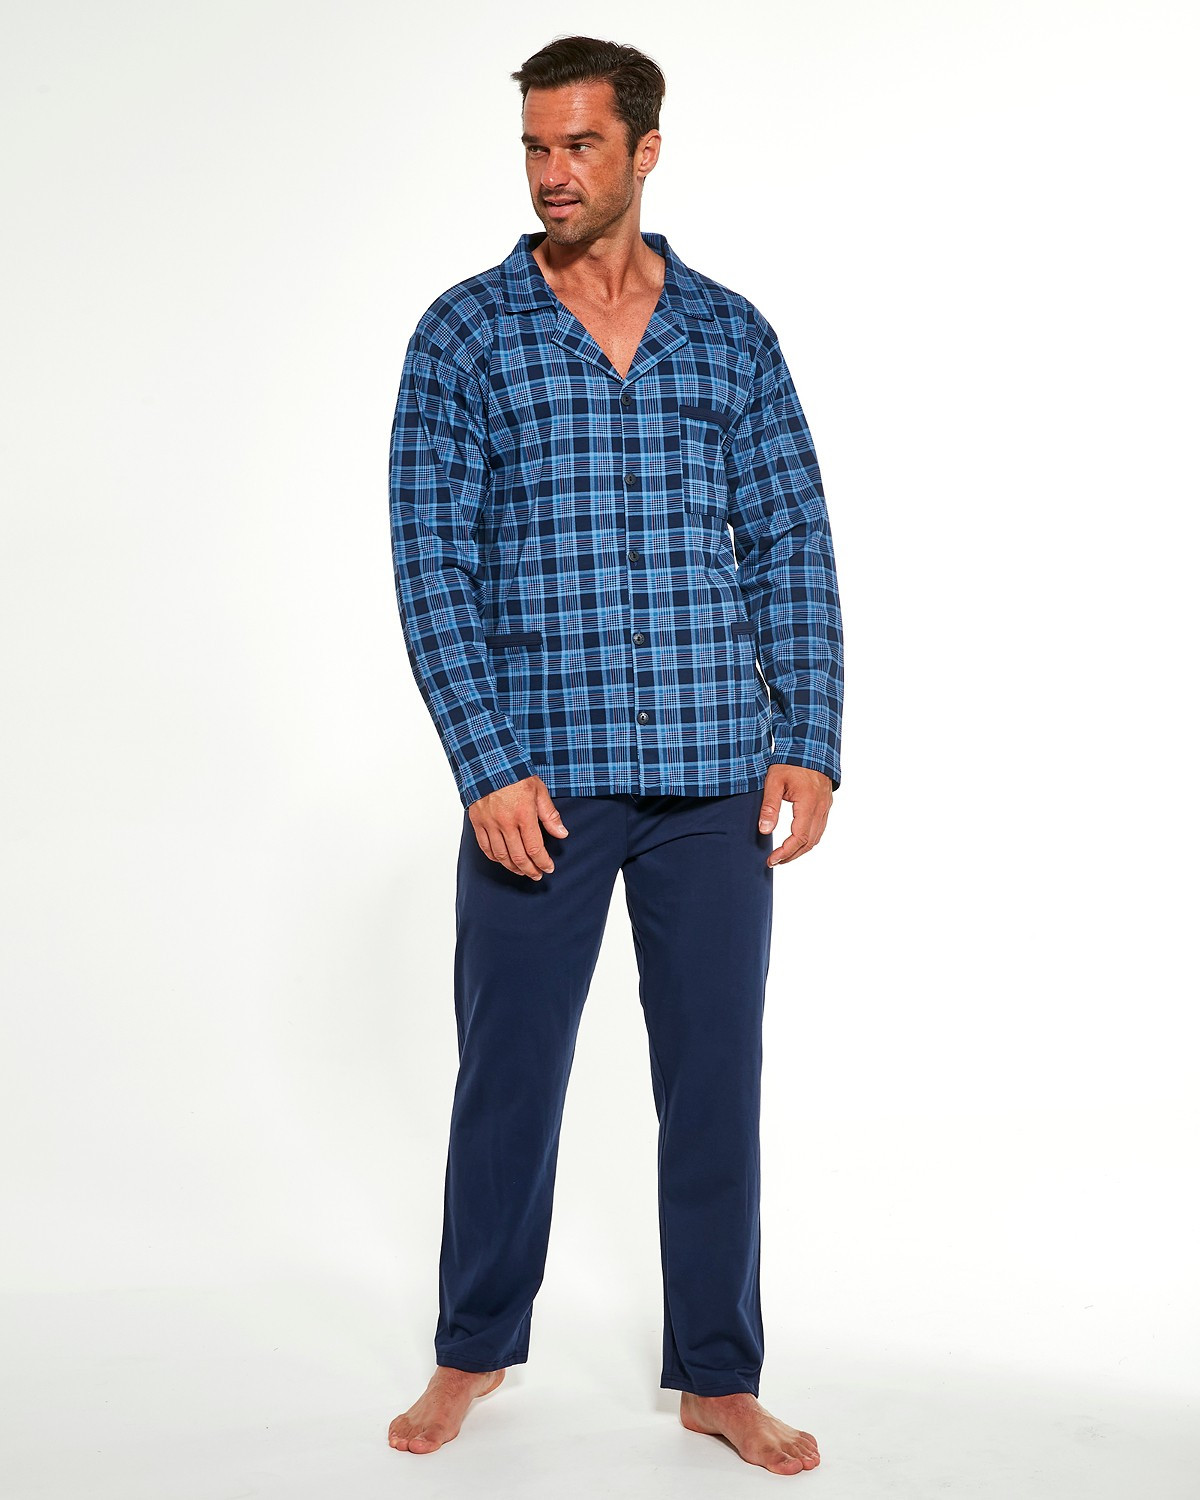 Pánské rozepínací pyžamo Cornette 114/48 654304 3XL-5XL tmavě modrá 4XL